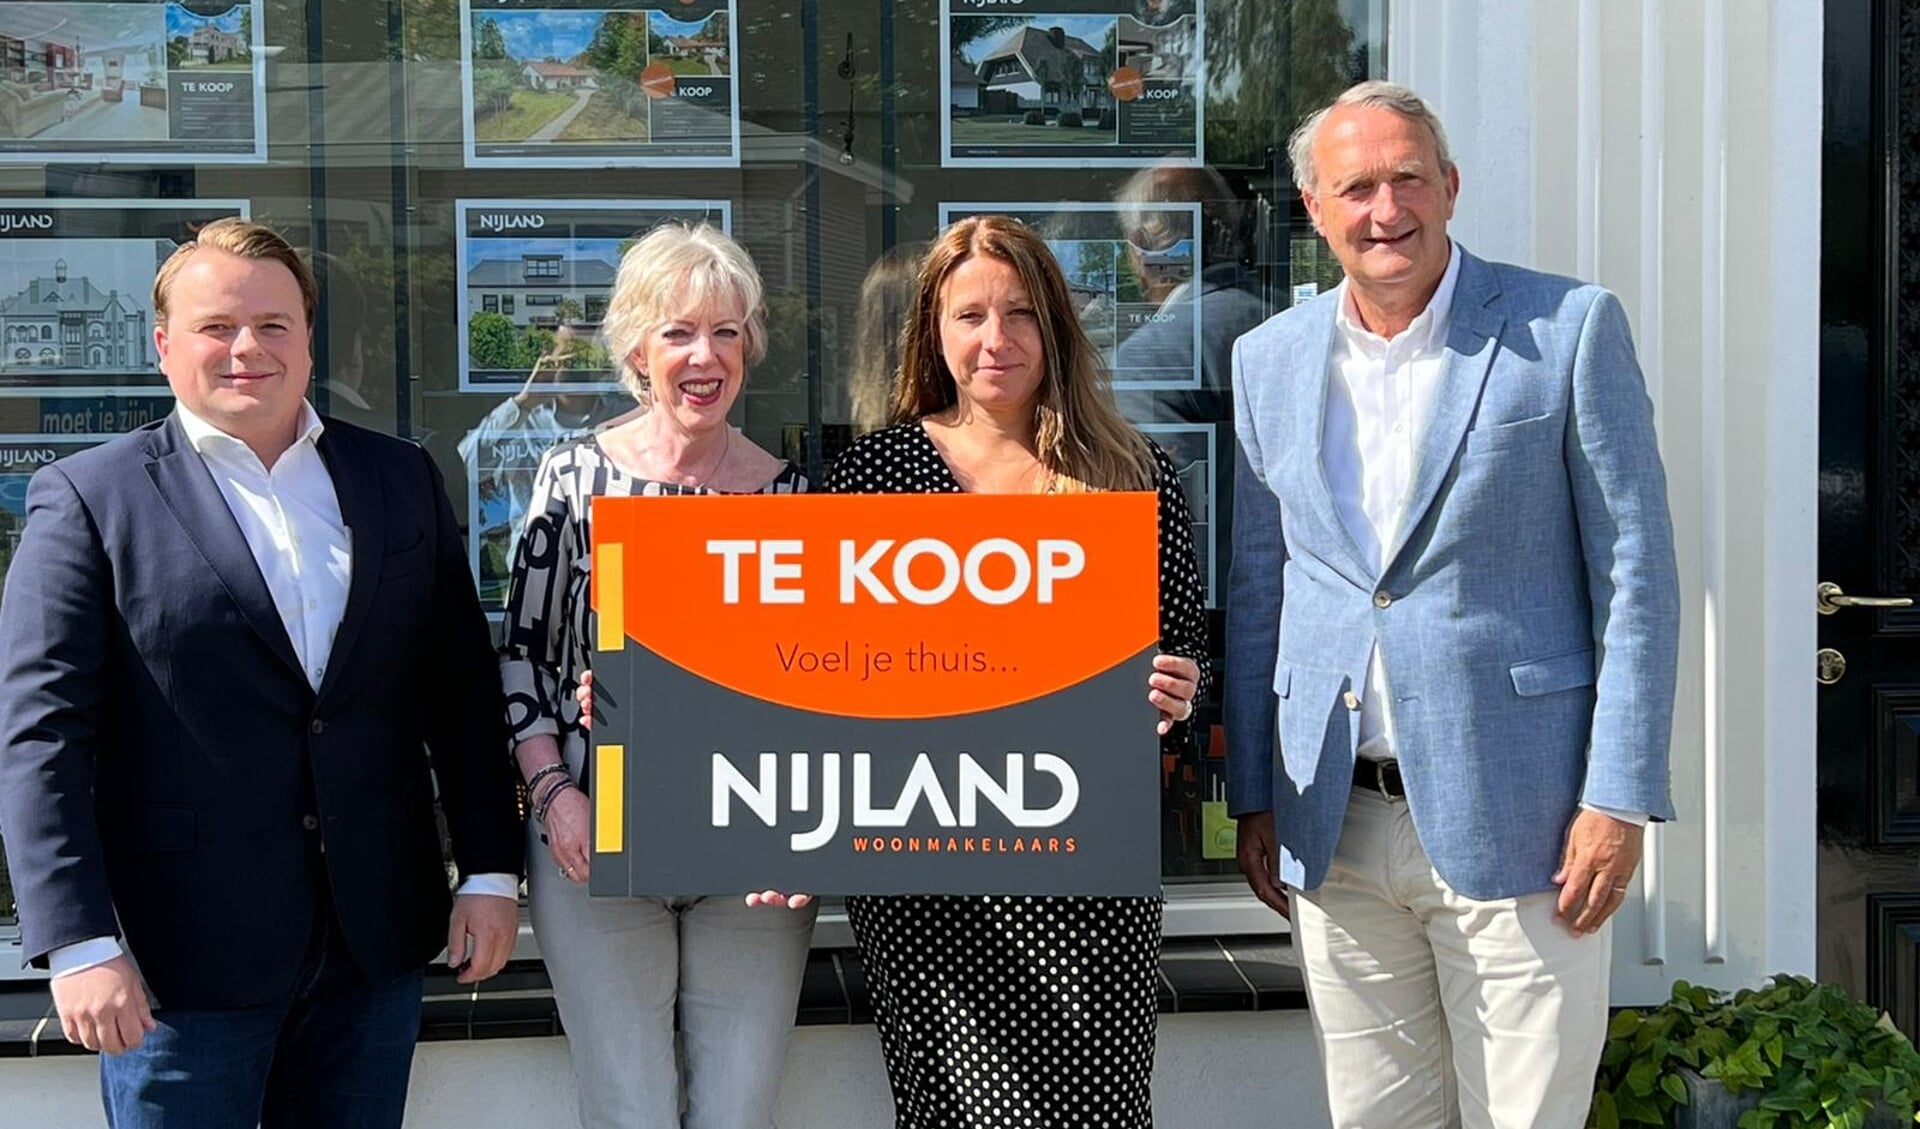 Het team van Nijland Makelaars Baarn met vlnr Jeroen Jager, Tineke Janssen, Muriël van Tuijl
en Willem Prins.